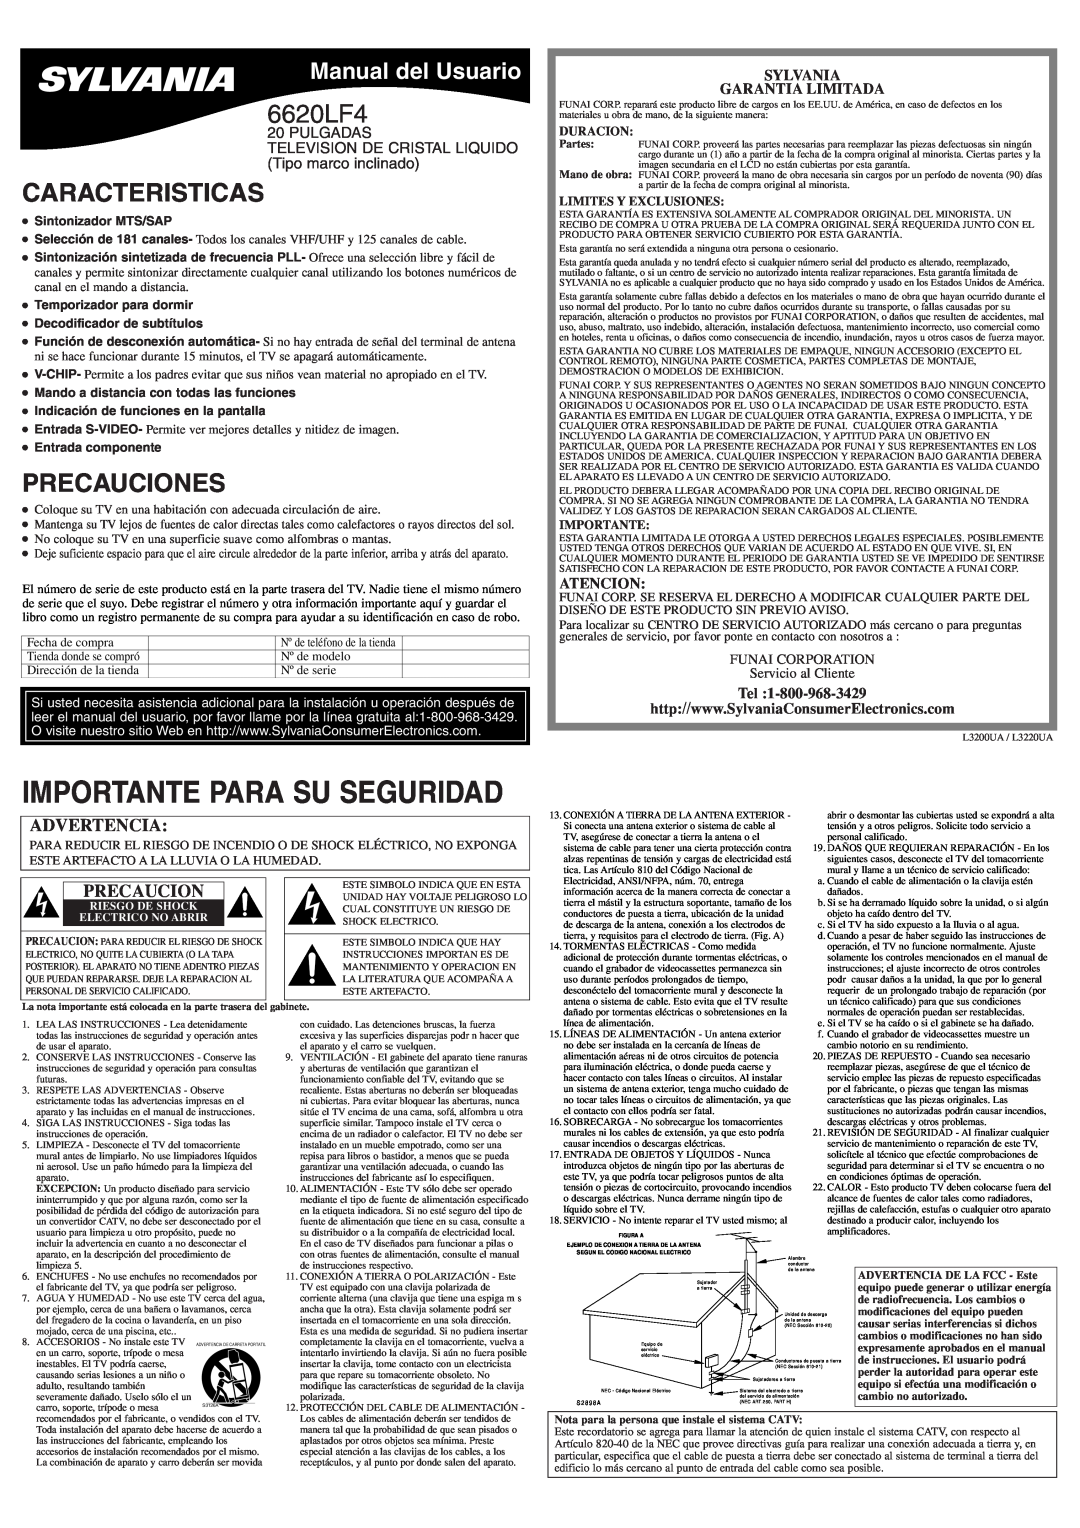 Sylvania 6620LF4 Caracteristicas, Precauciones, Manual del Usuario, Sylvania Garantia Limitada, Atencion, Duracion 